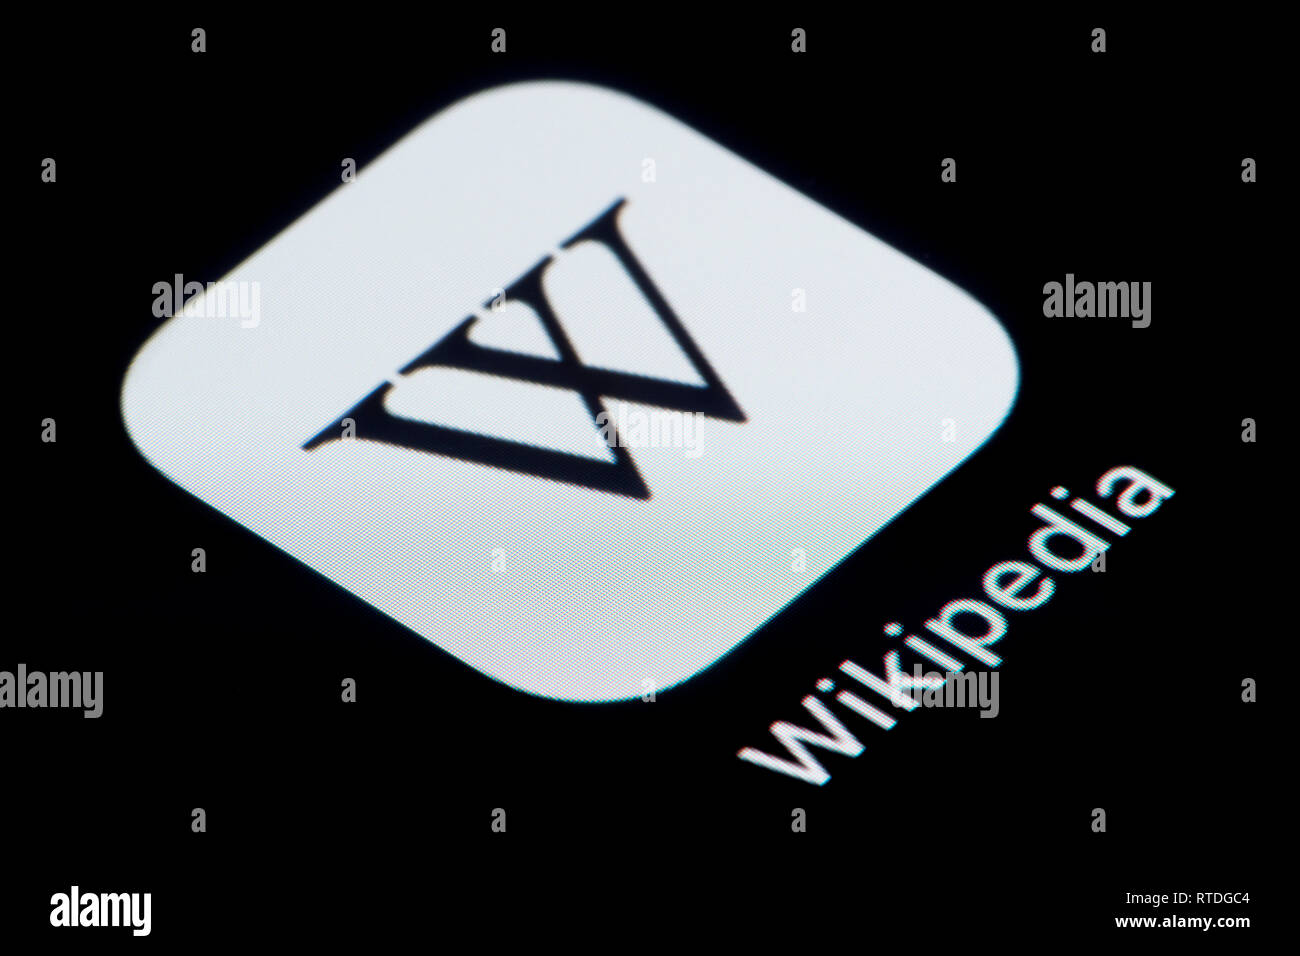 Un gros plan de l'icône de l'application wikipedia, comme on le voit sur l'écran d'un téléphone intelligent (usage éditorial uniquement) Banque D'Images